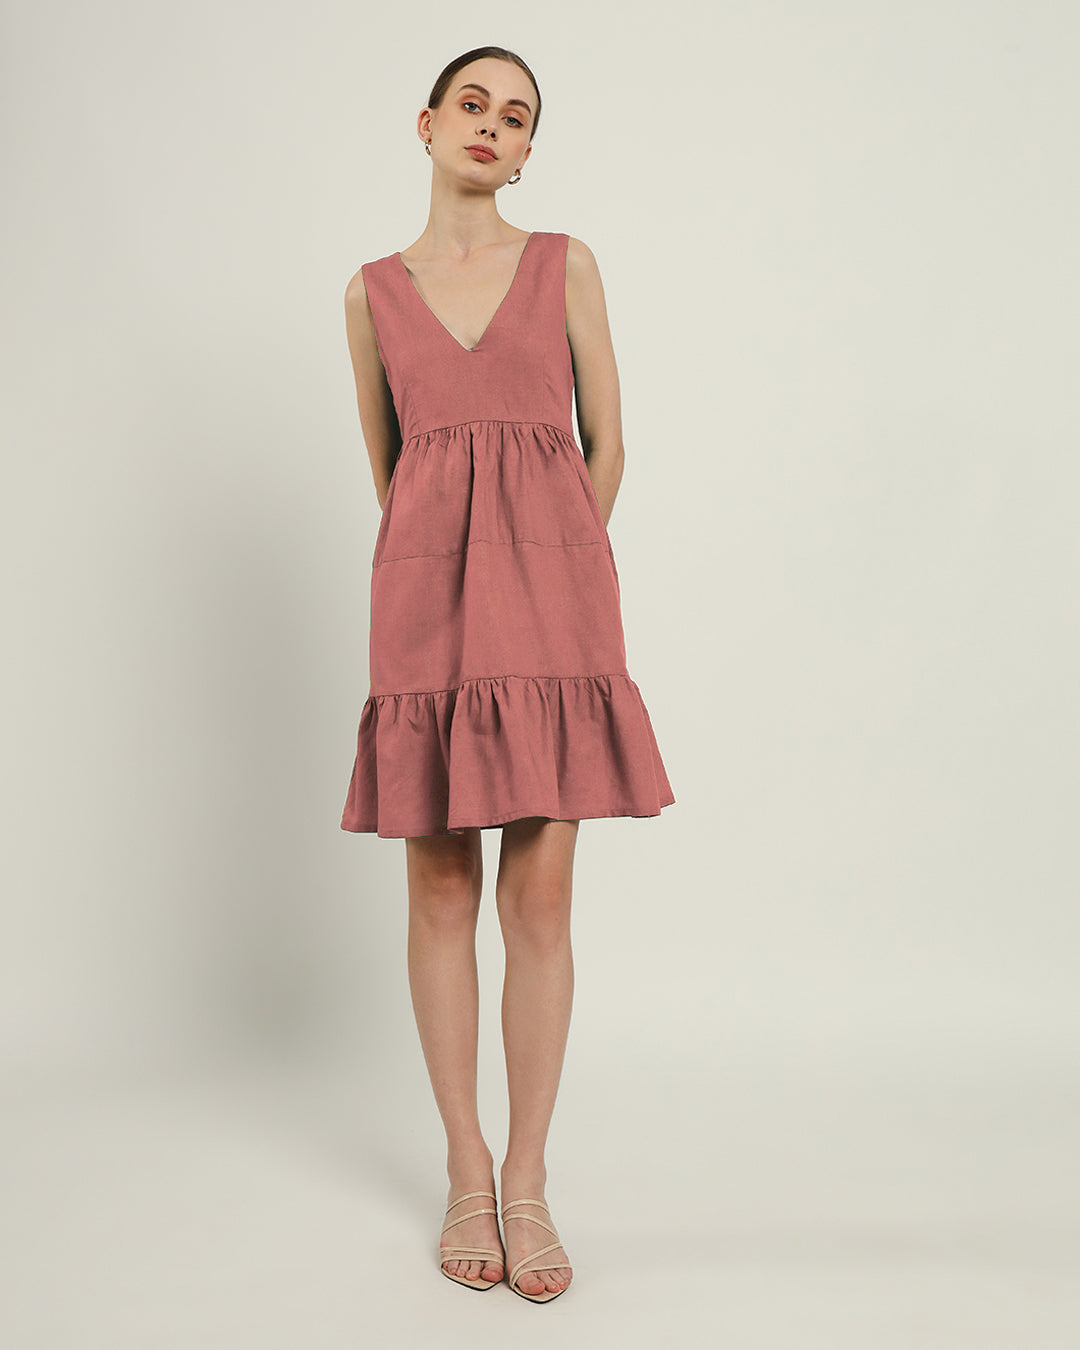 The Minsk Ivory Pink Cotton Dress